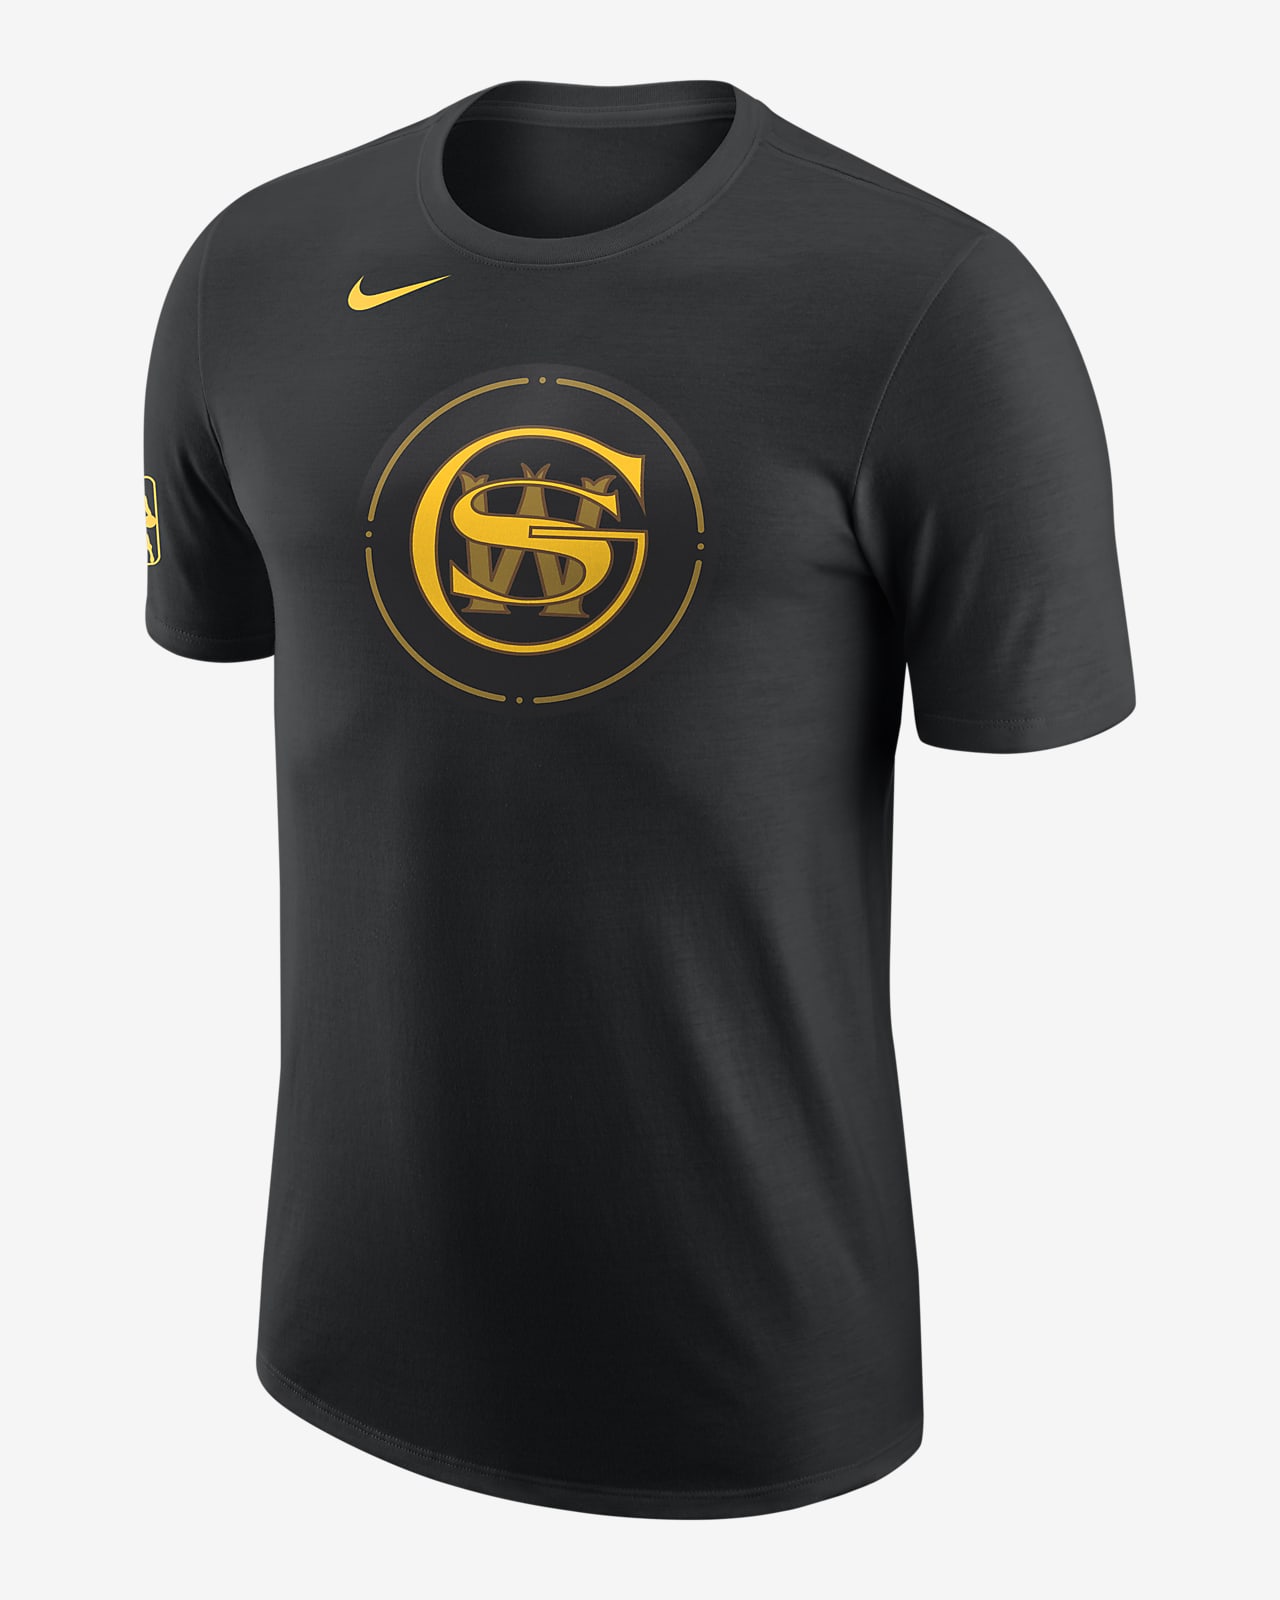 Golden State Warriors City Edition Men's Nike NBA T-Shirt